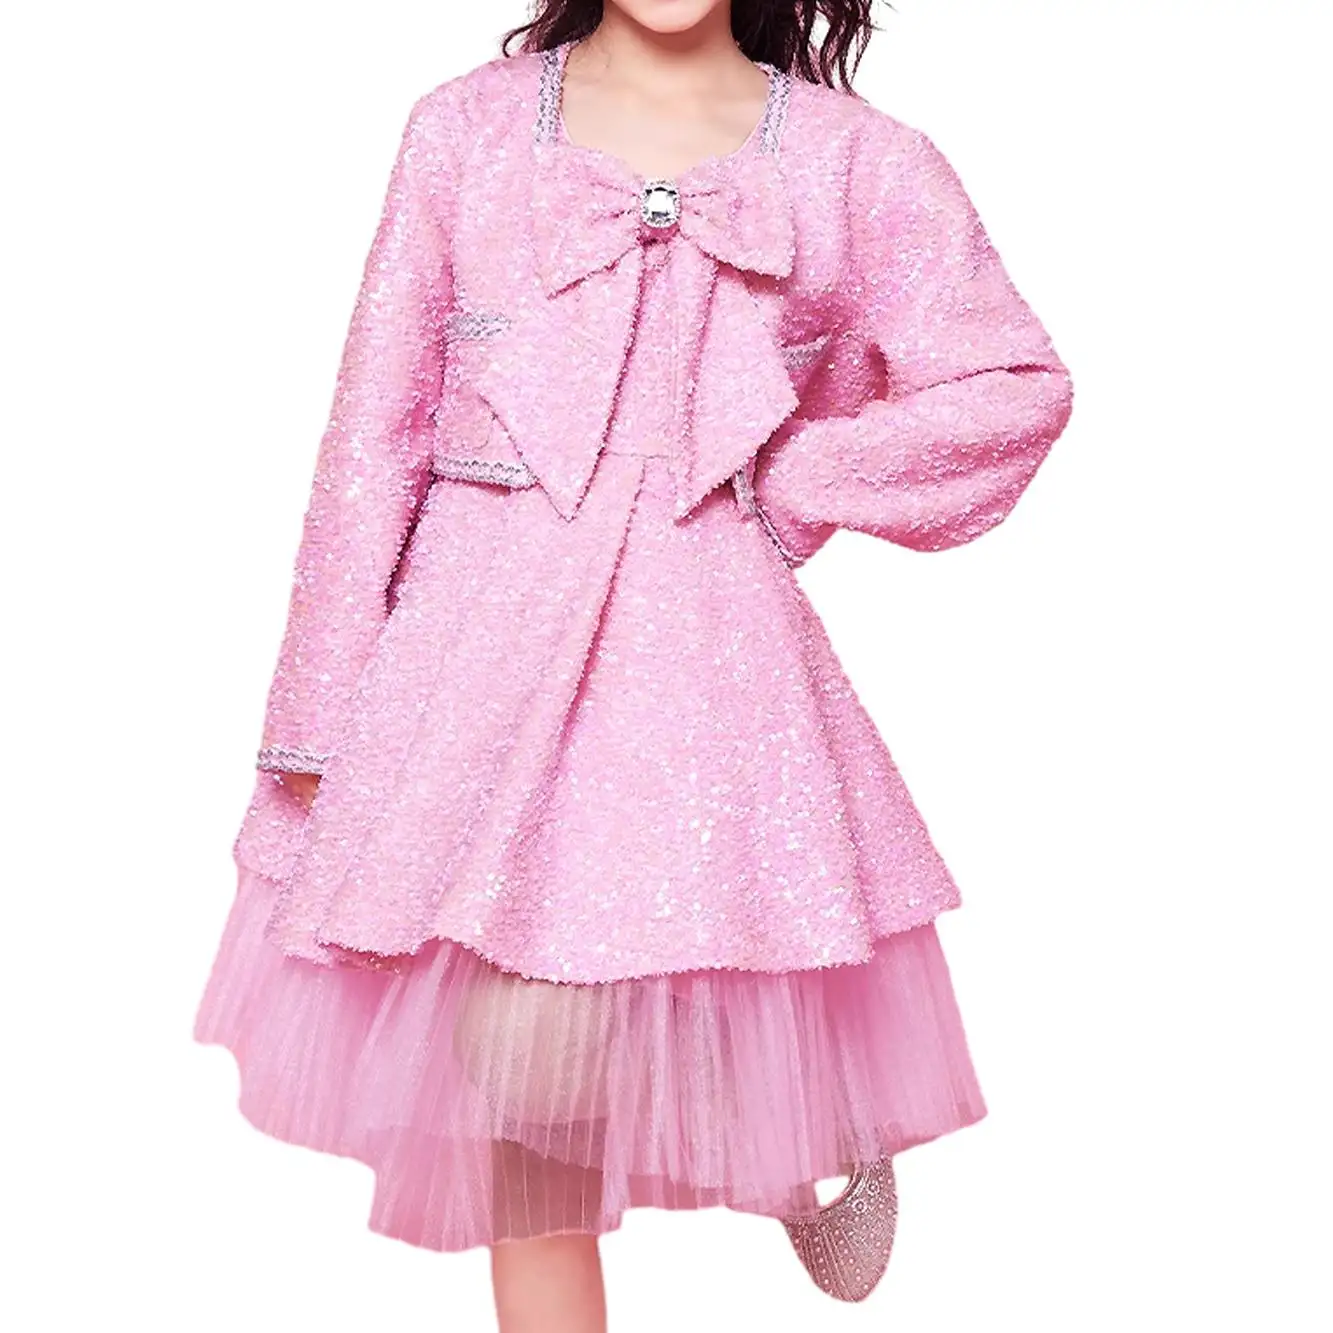 Individuelles retro-Kinderkind Baby rosa Mädchenkleid leicht luxuriöser Stil Schleife Prinzessenkleid mit Jacke